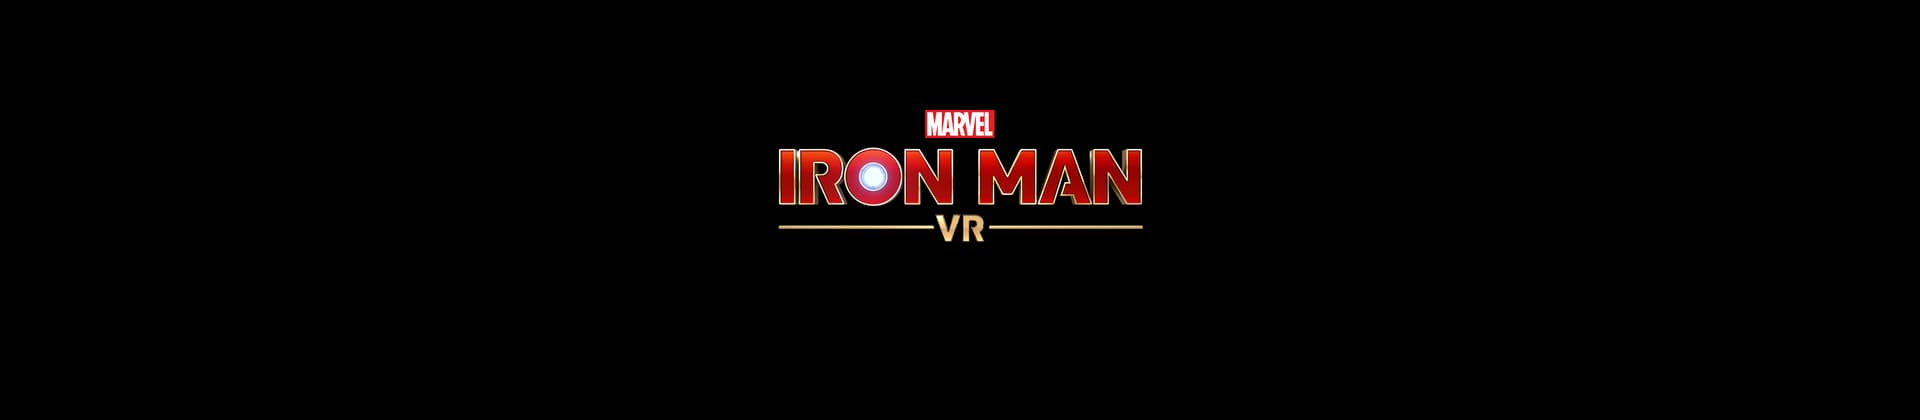 Marvel's Iron Man VR Game Logo On Black